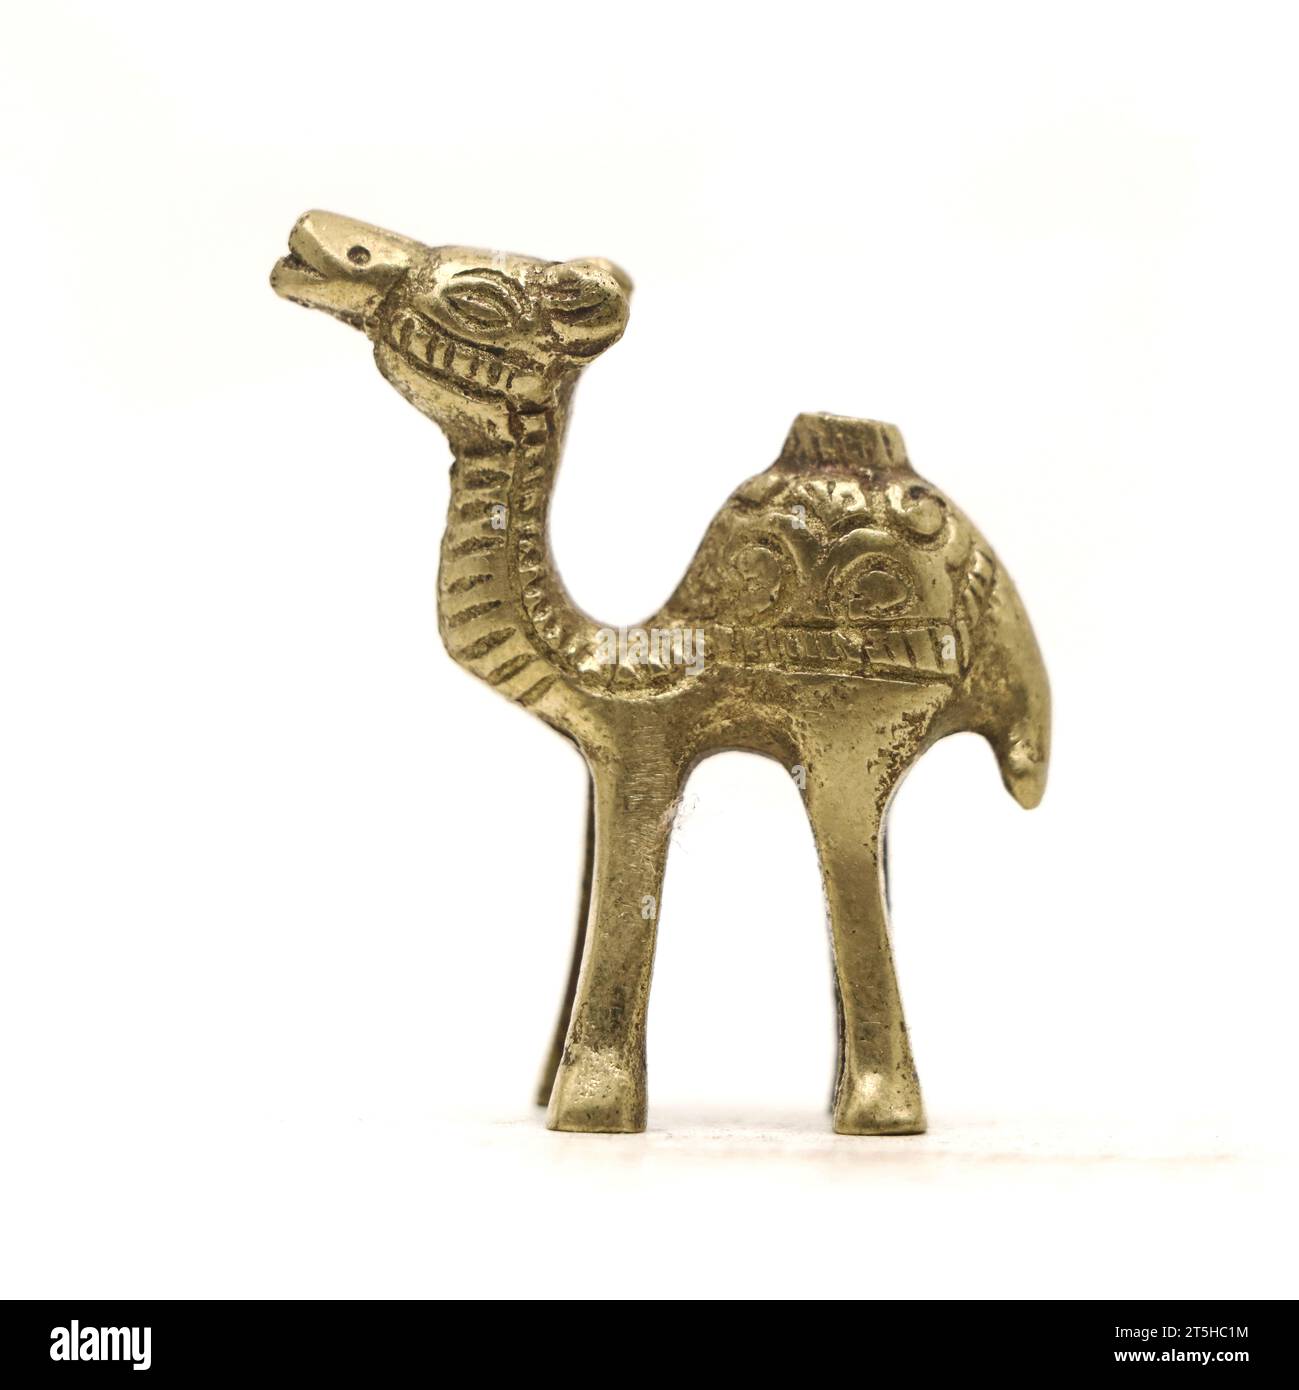 Eine alte Kamelfigur mit wunderschönen Details aus goldenem Messingmetall, isoliert auf weißem Hintergrund Stockfoto